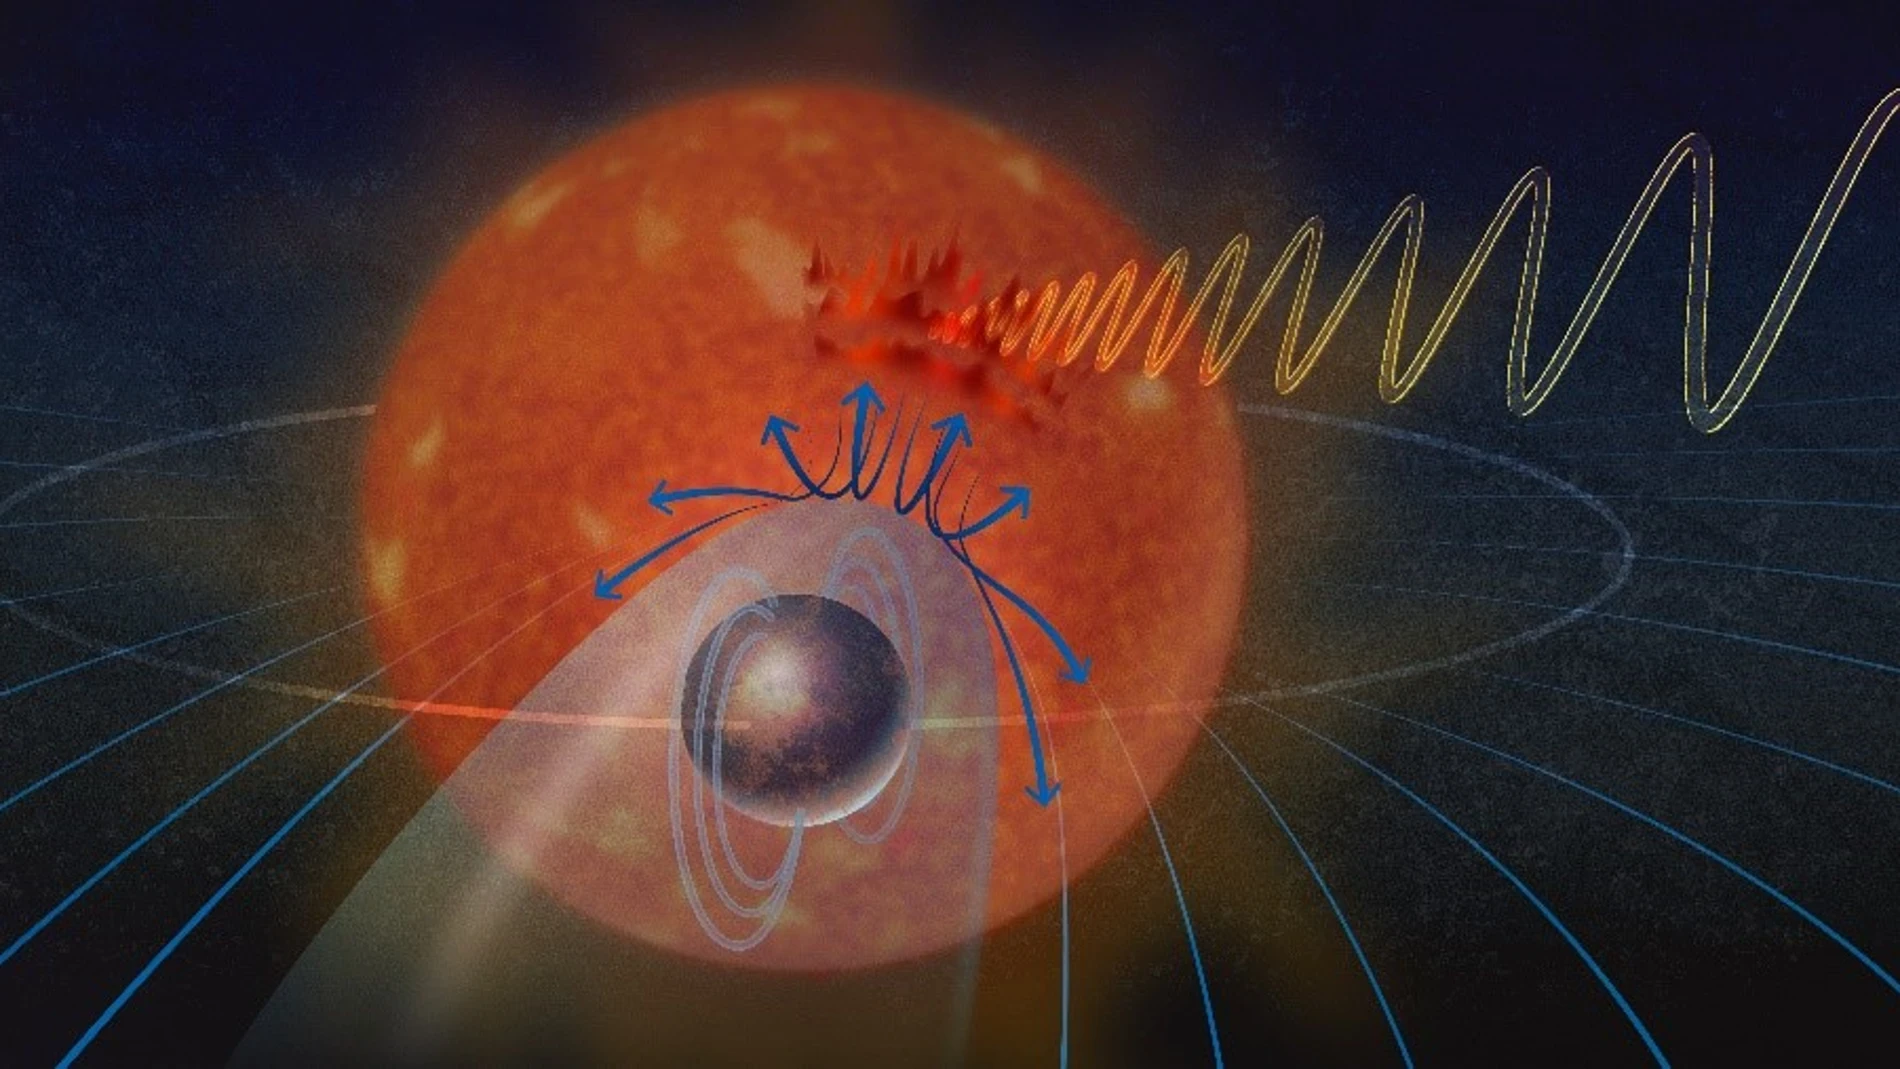 Representación conceptual artística de las interacciones entre un exoplaneta y su estrella. El plasma emitido por la estrella es desviado por el campo magnético del exoplaneta. Esta interacción perturba el campo magnético de la estrella y genera auroras en la estrella y ondas de radio.